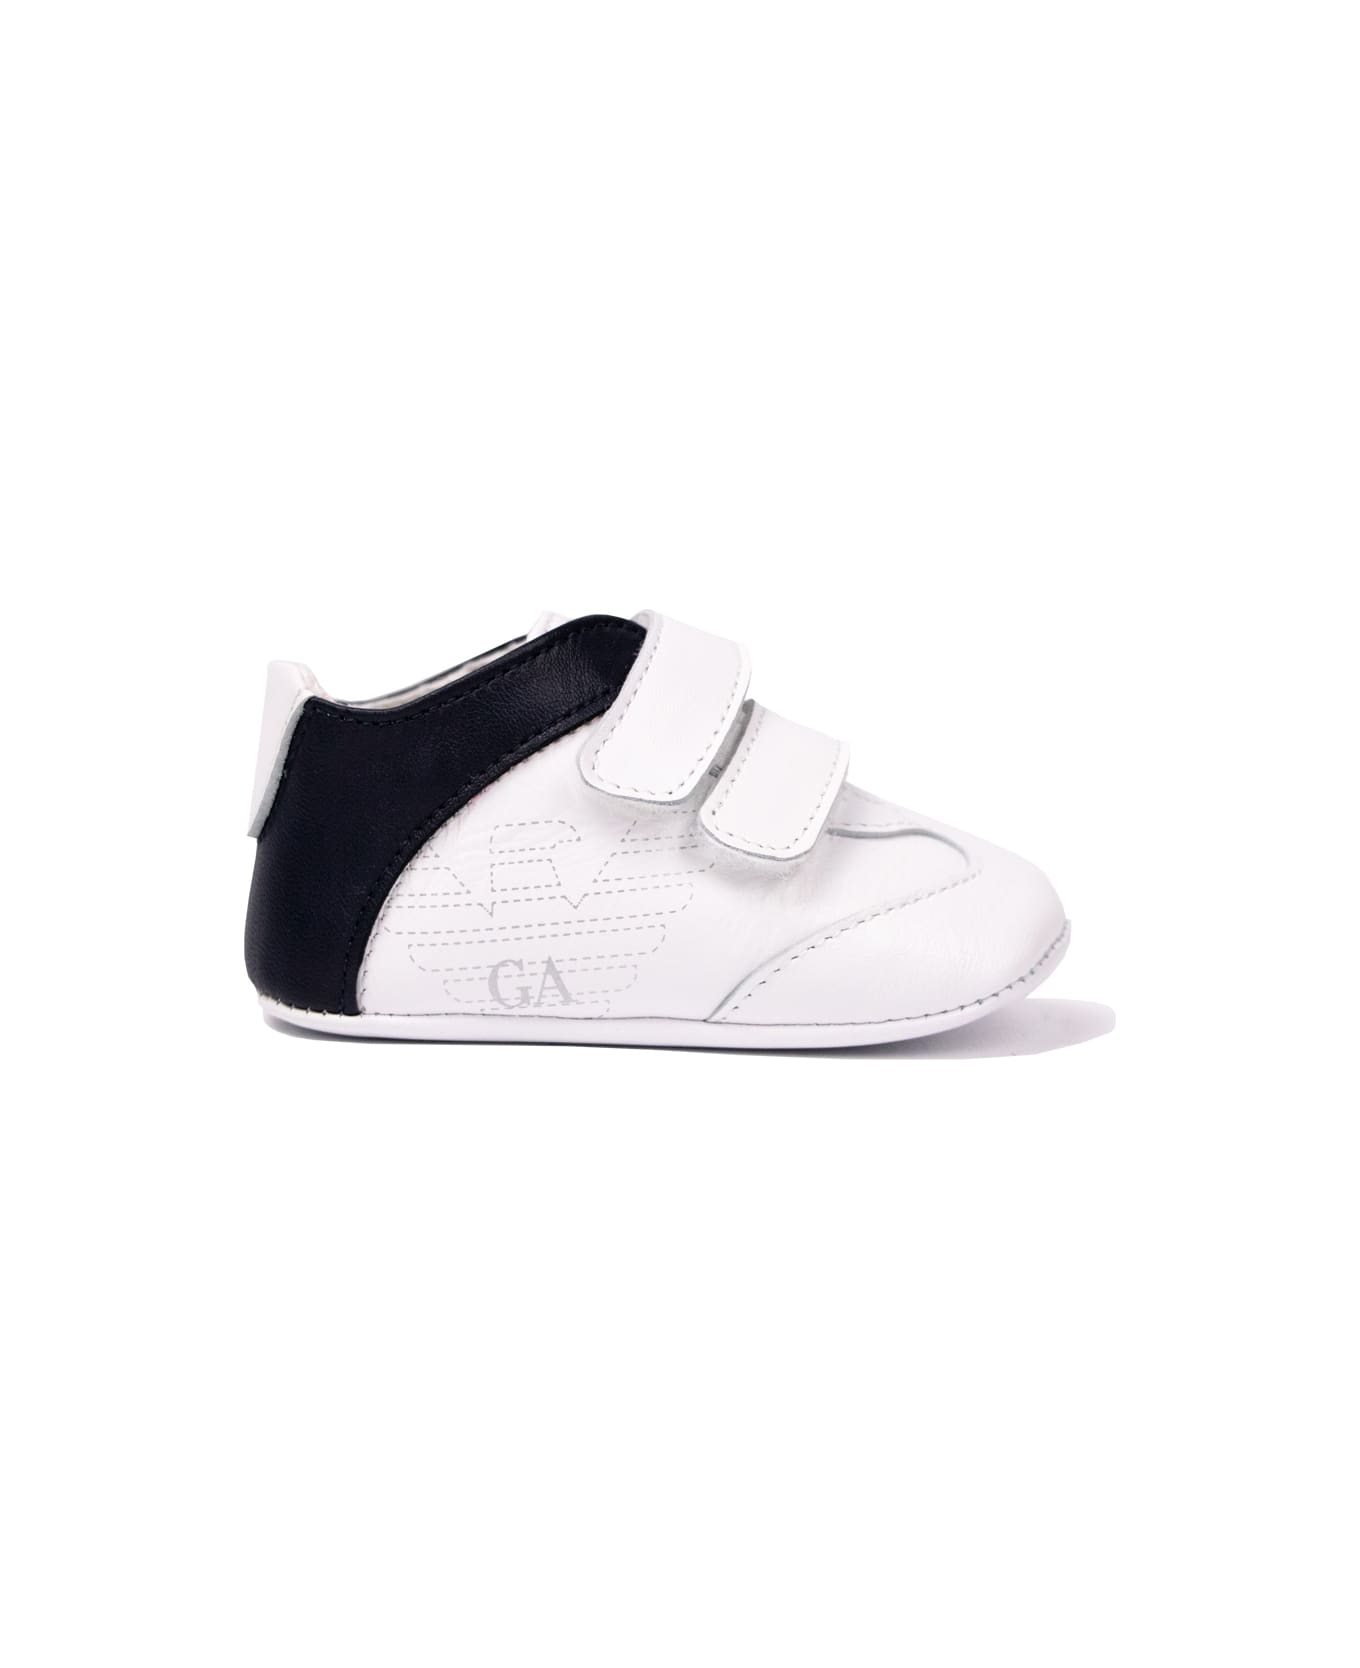 Emporio Armani Cradle Sneakers - White シューズ